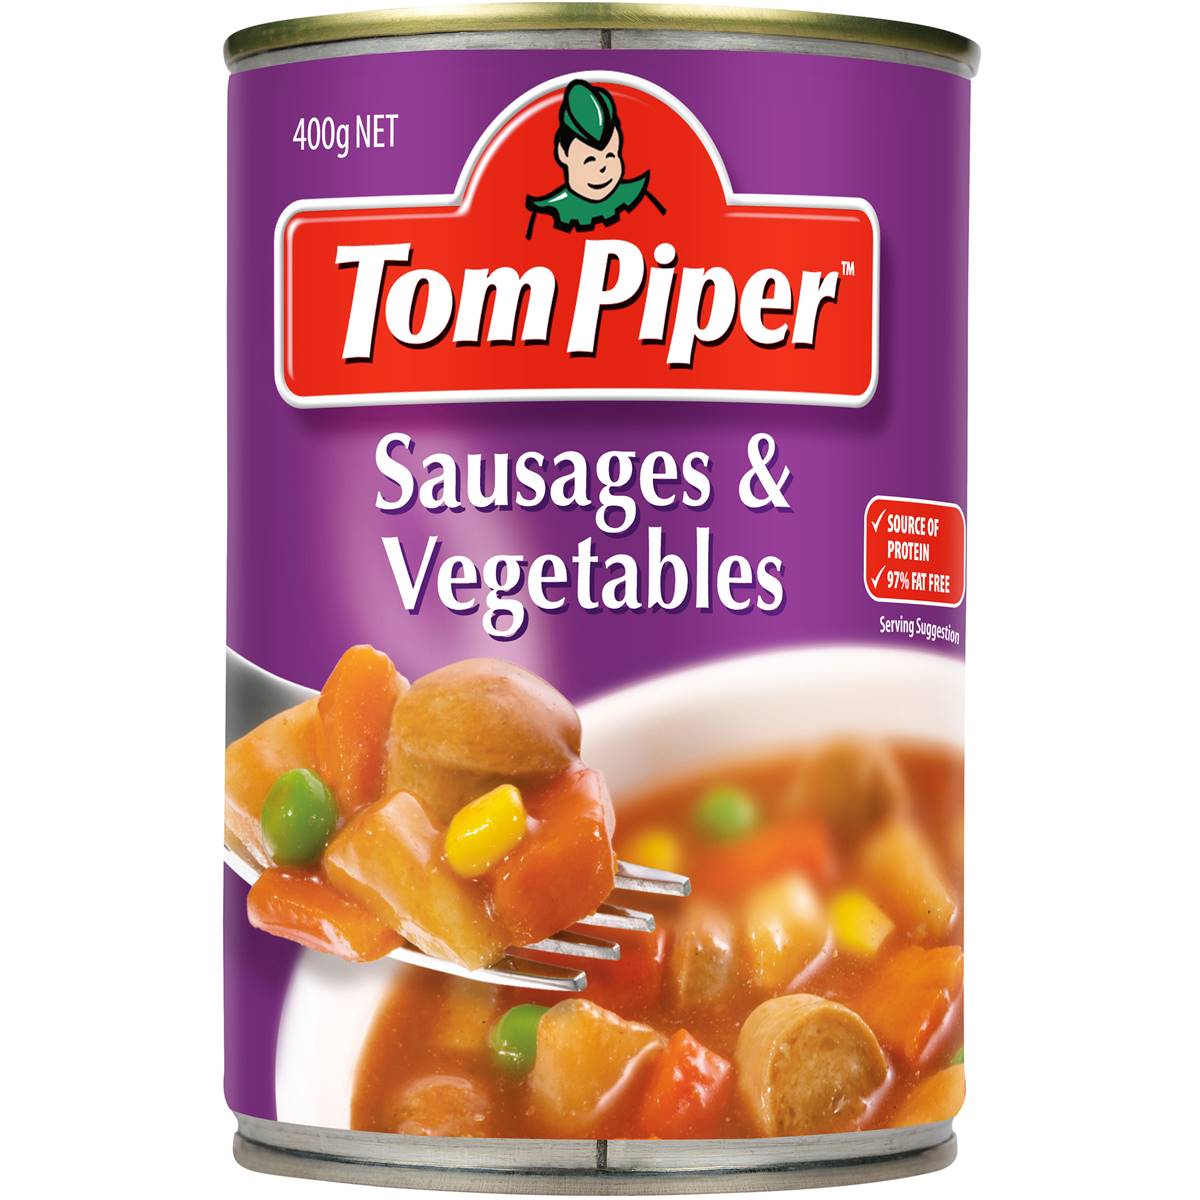 Tom Piper Sausages & Vegetables